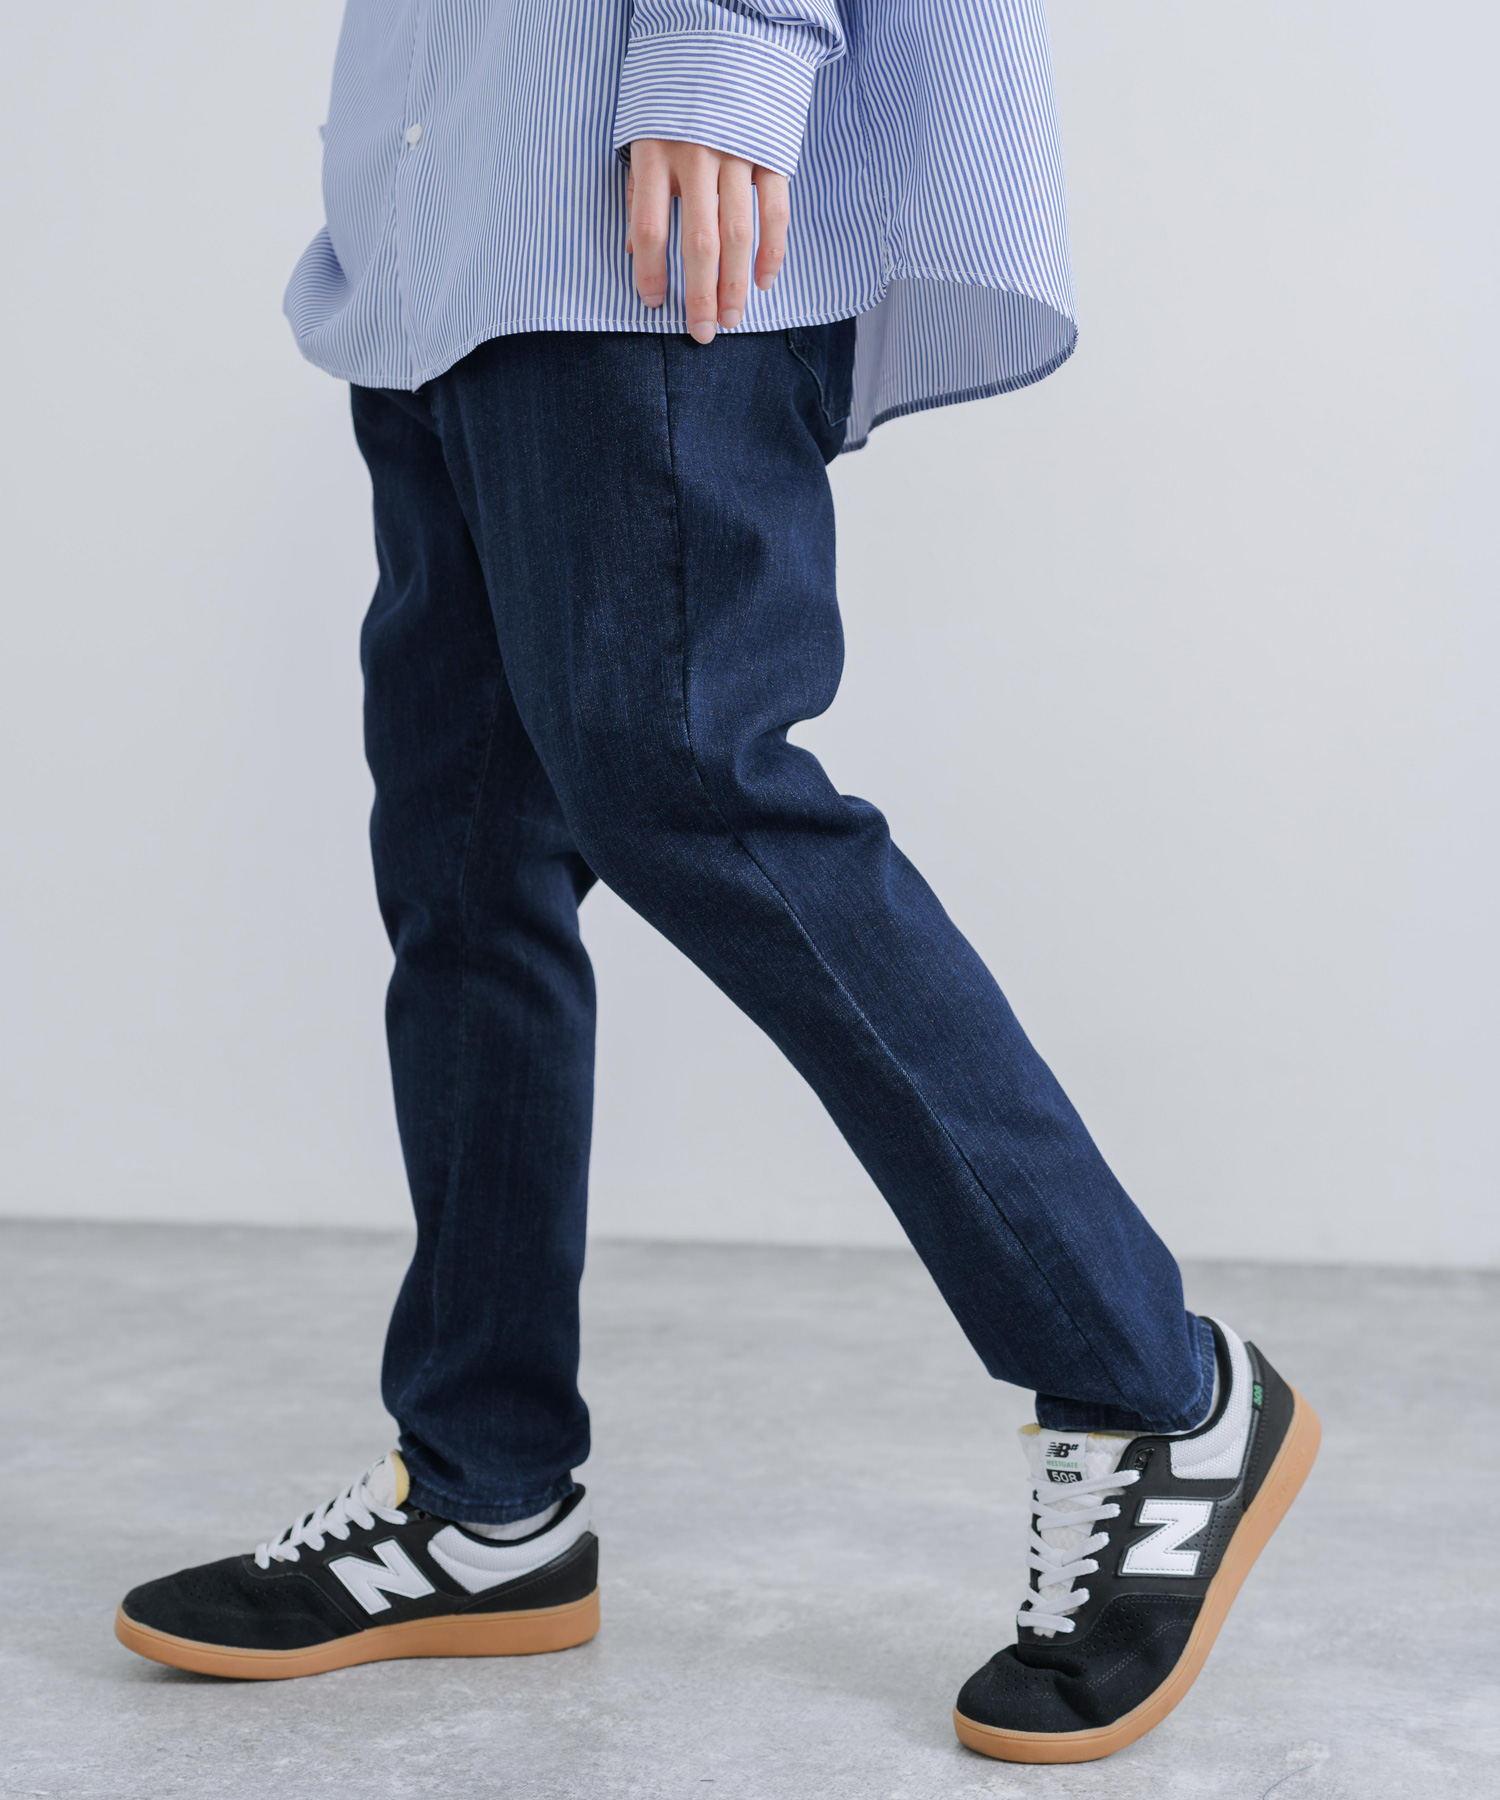 ジョガーパンツ ブルー XL 韓国 メンズ ジーパン ストリート ストレッチ